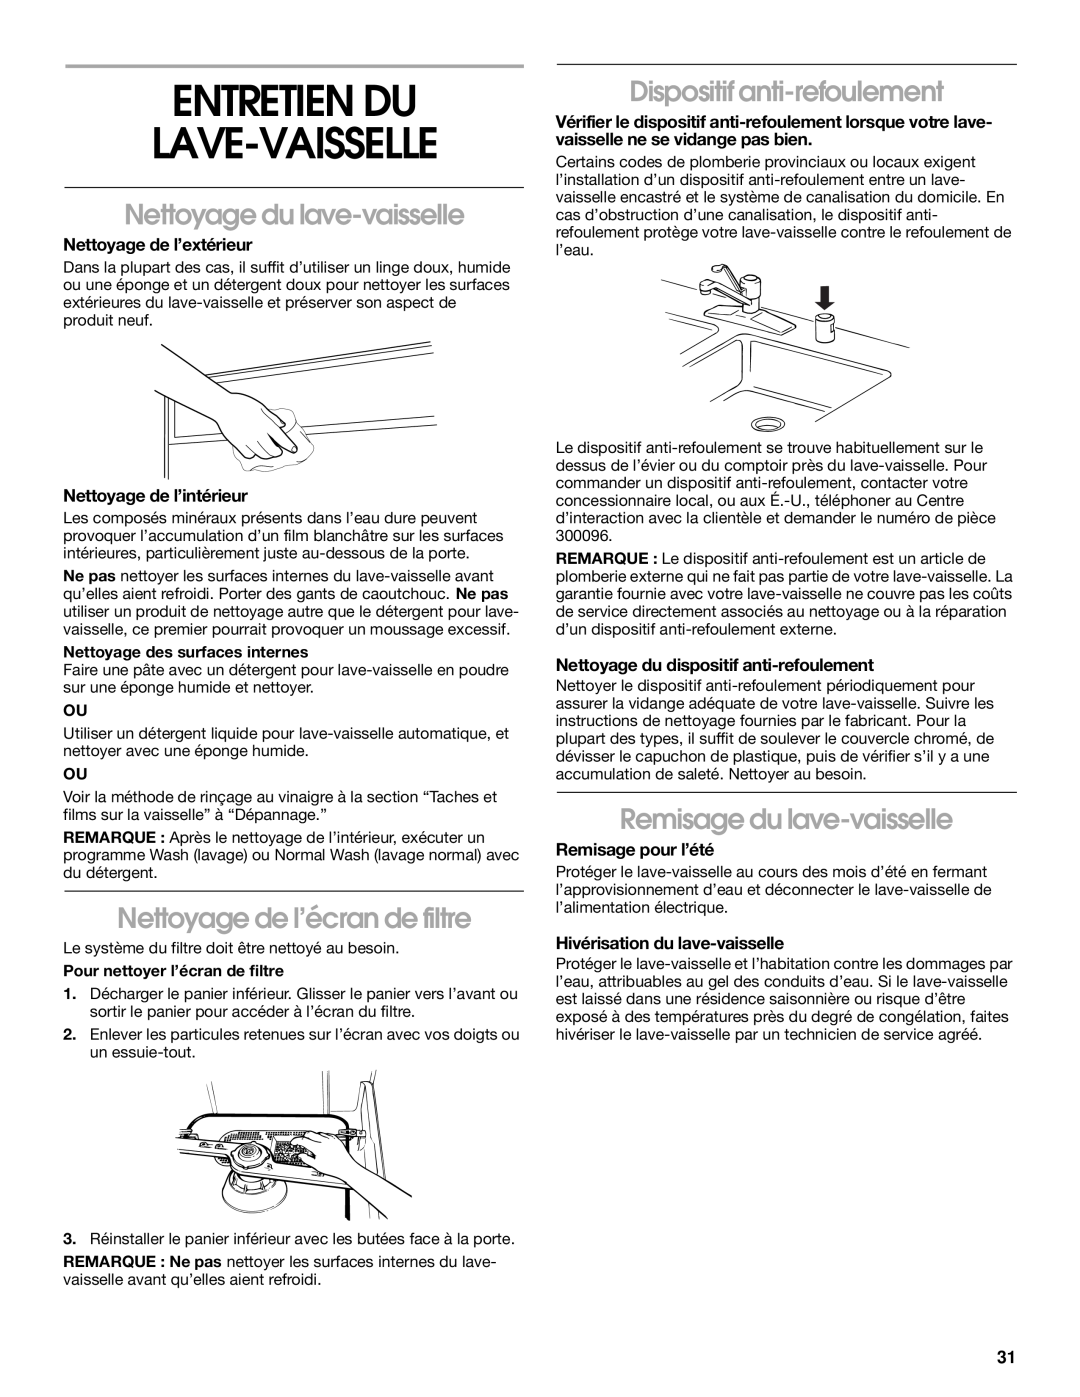 Whirlpool RUD3000, RUD5000 manual Entretien Du Lave-Vaisselle, Nettoyage du lave-vaisselle, Nettoyage de l’écran de filtre 